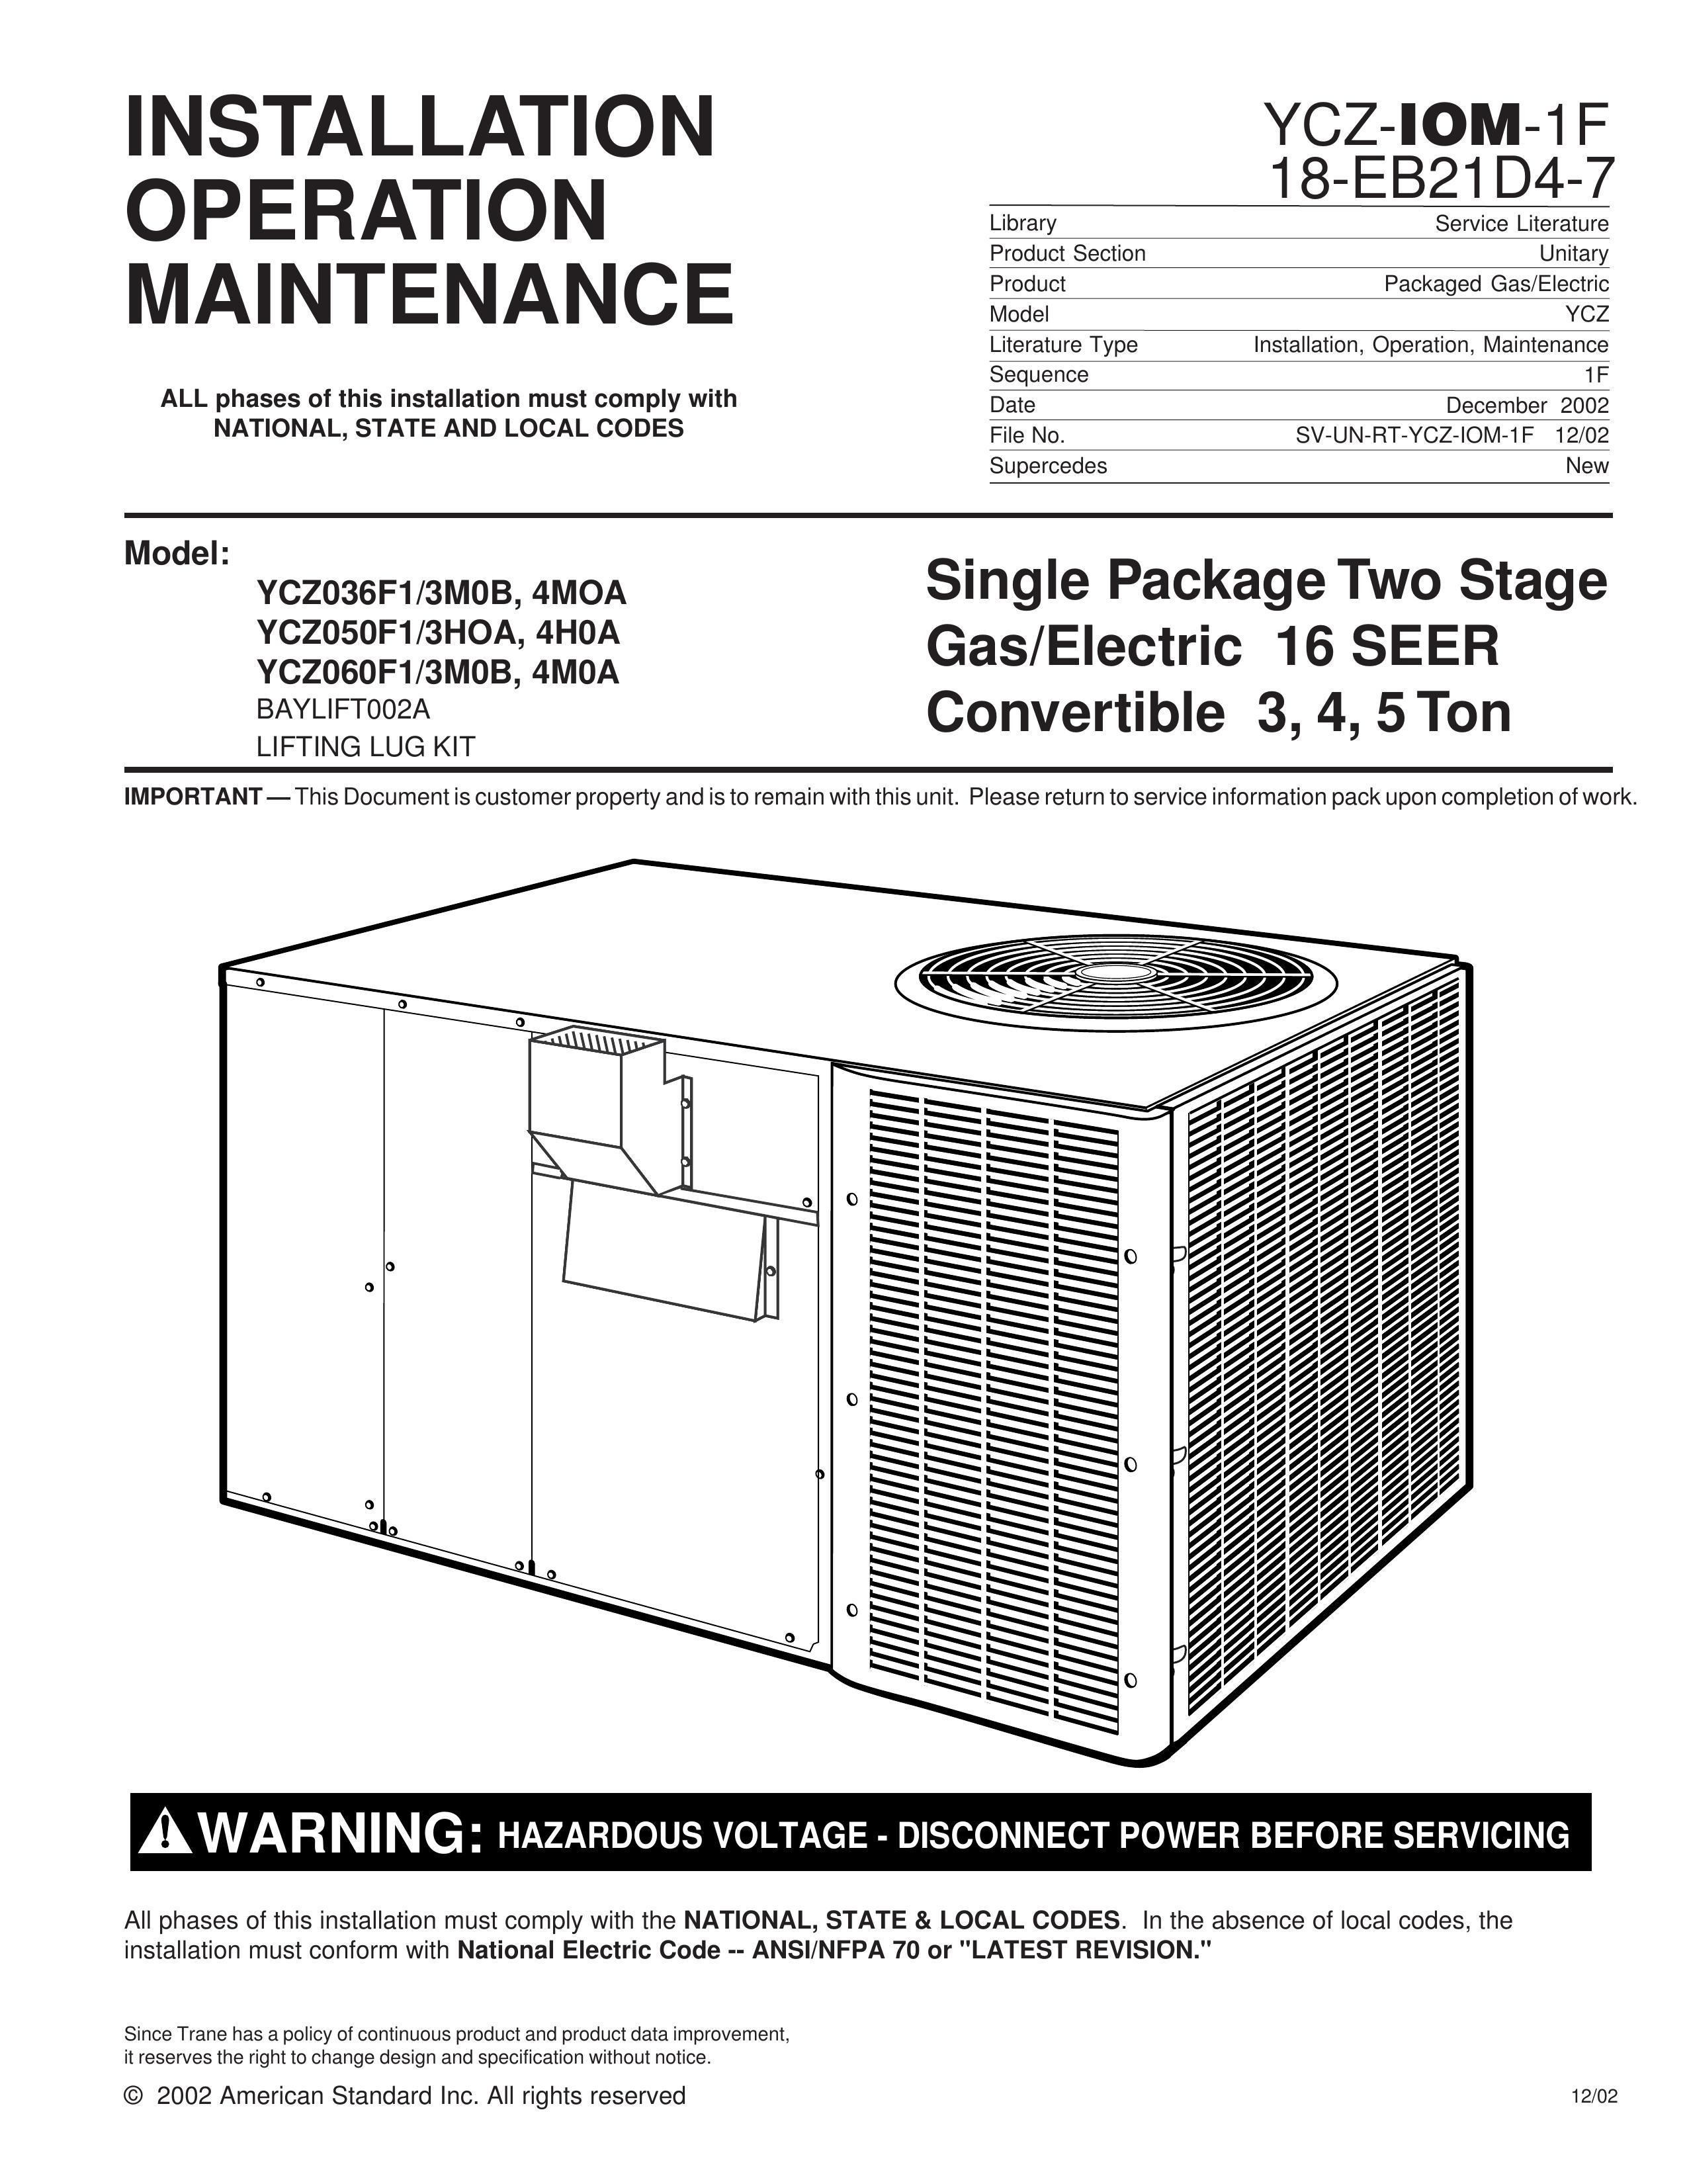 Trane YCZ035F1 Ventilation Hood User Manual